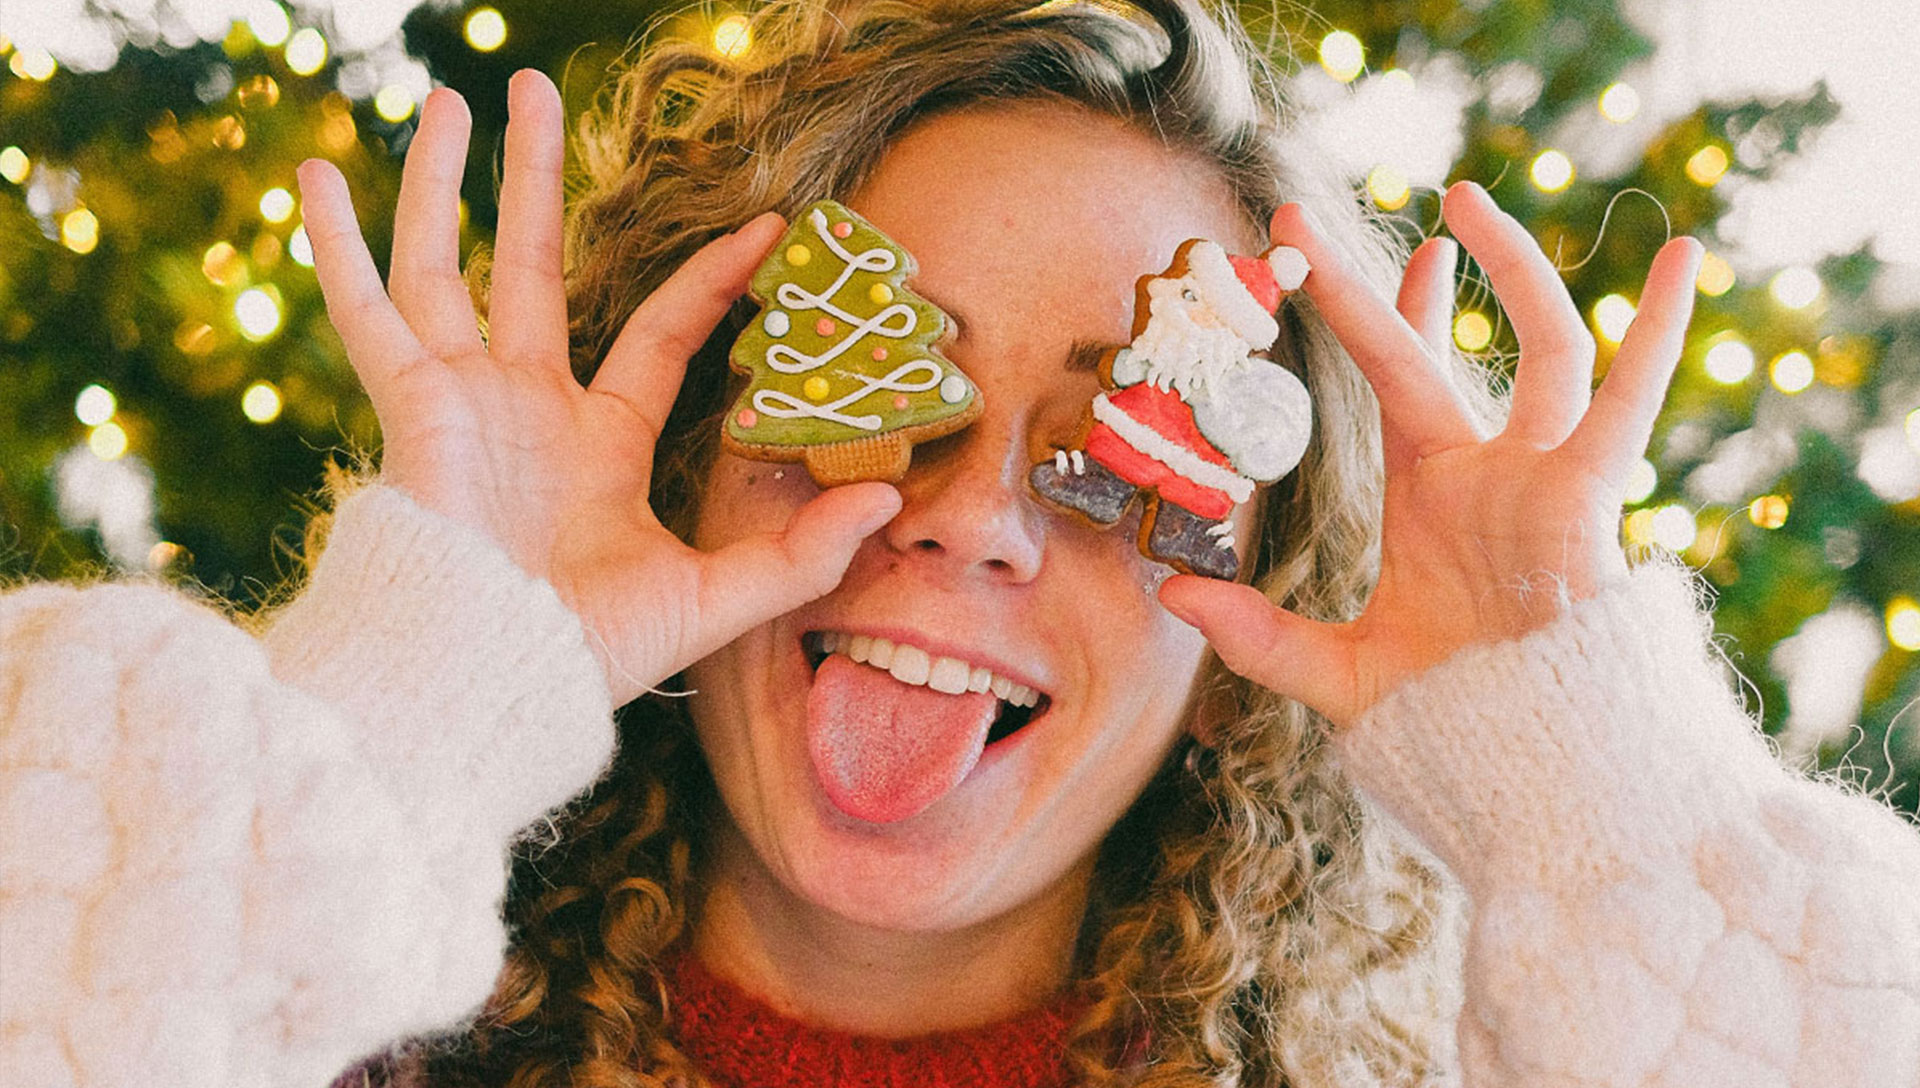 Eine junge Frau im Weihnachtspulli hält sich Christbaumschmuck vor die Augen. Fotocredits: Anna Shvets, pexels